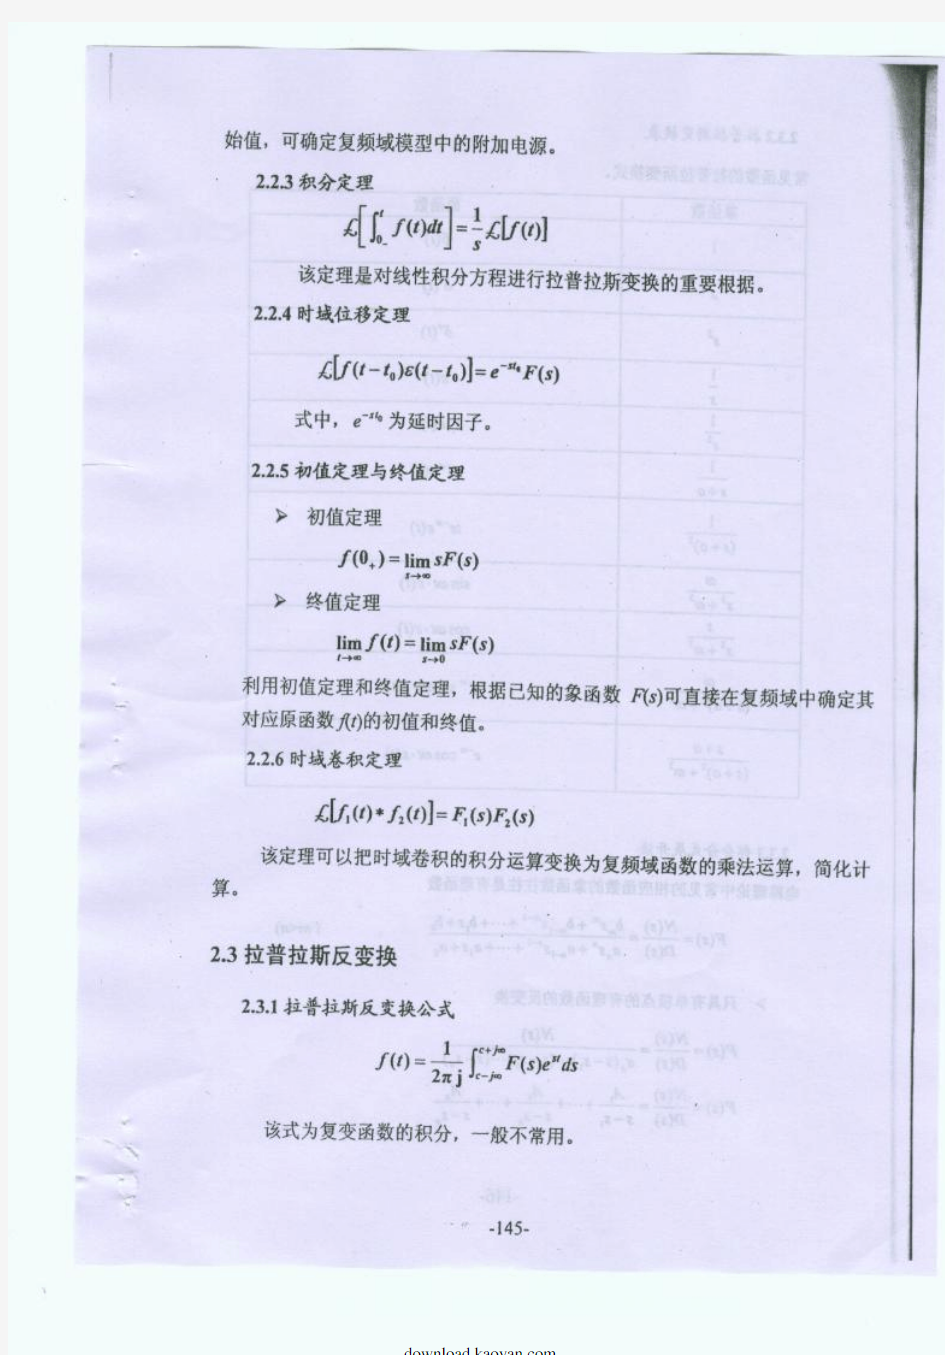 重庆大学电路原理考研复习资料(四)